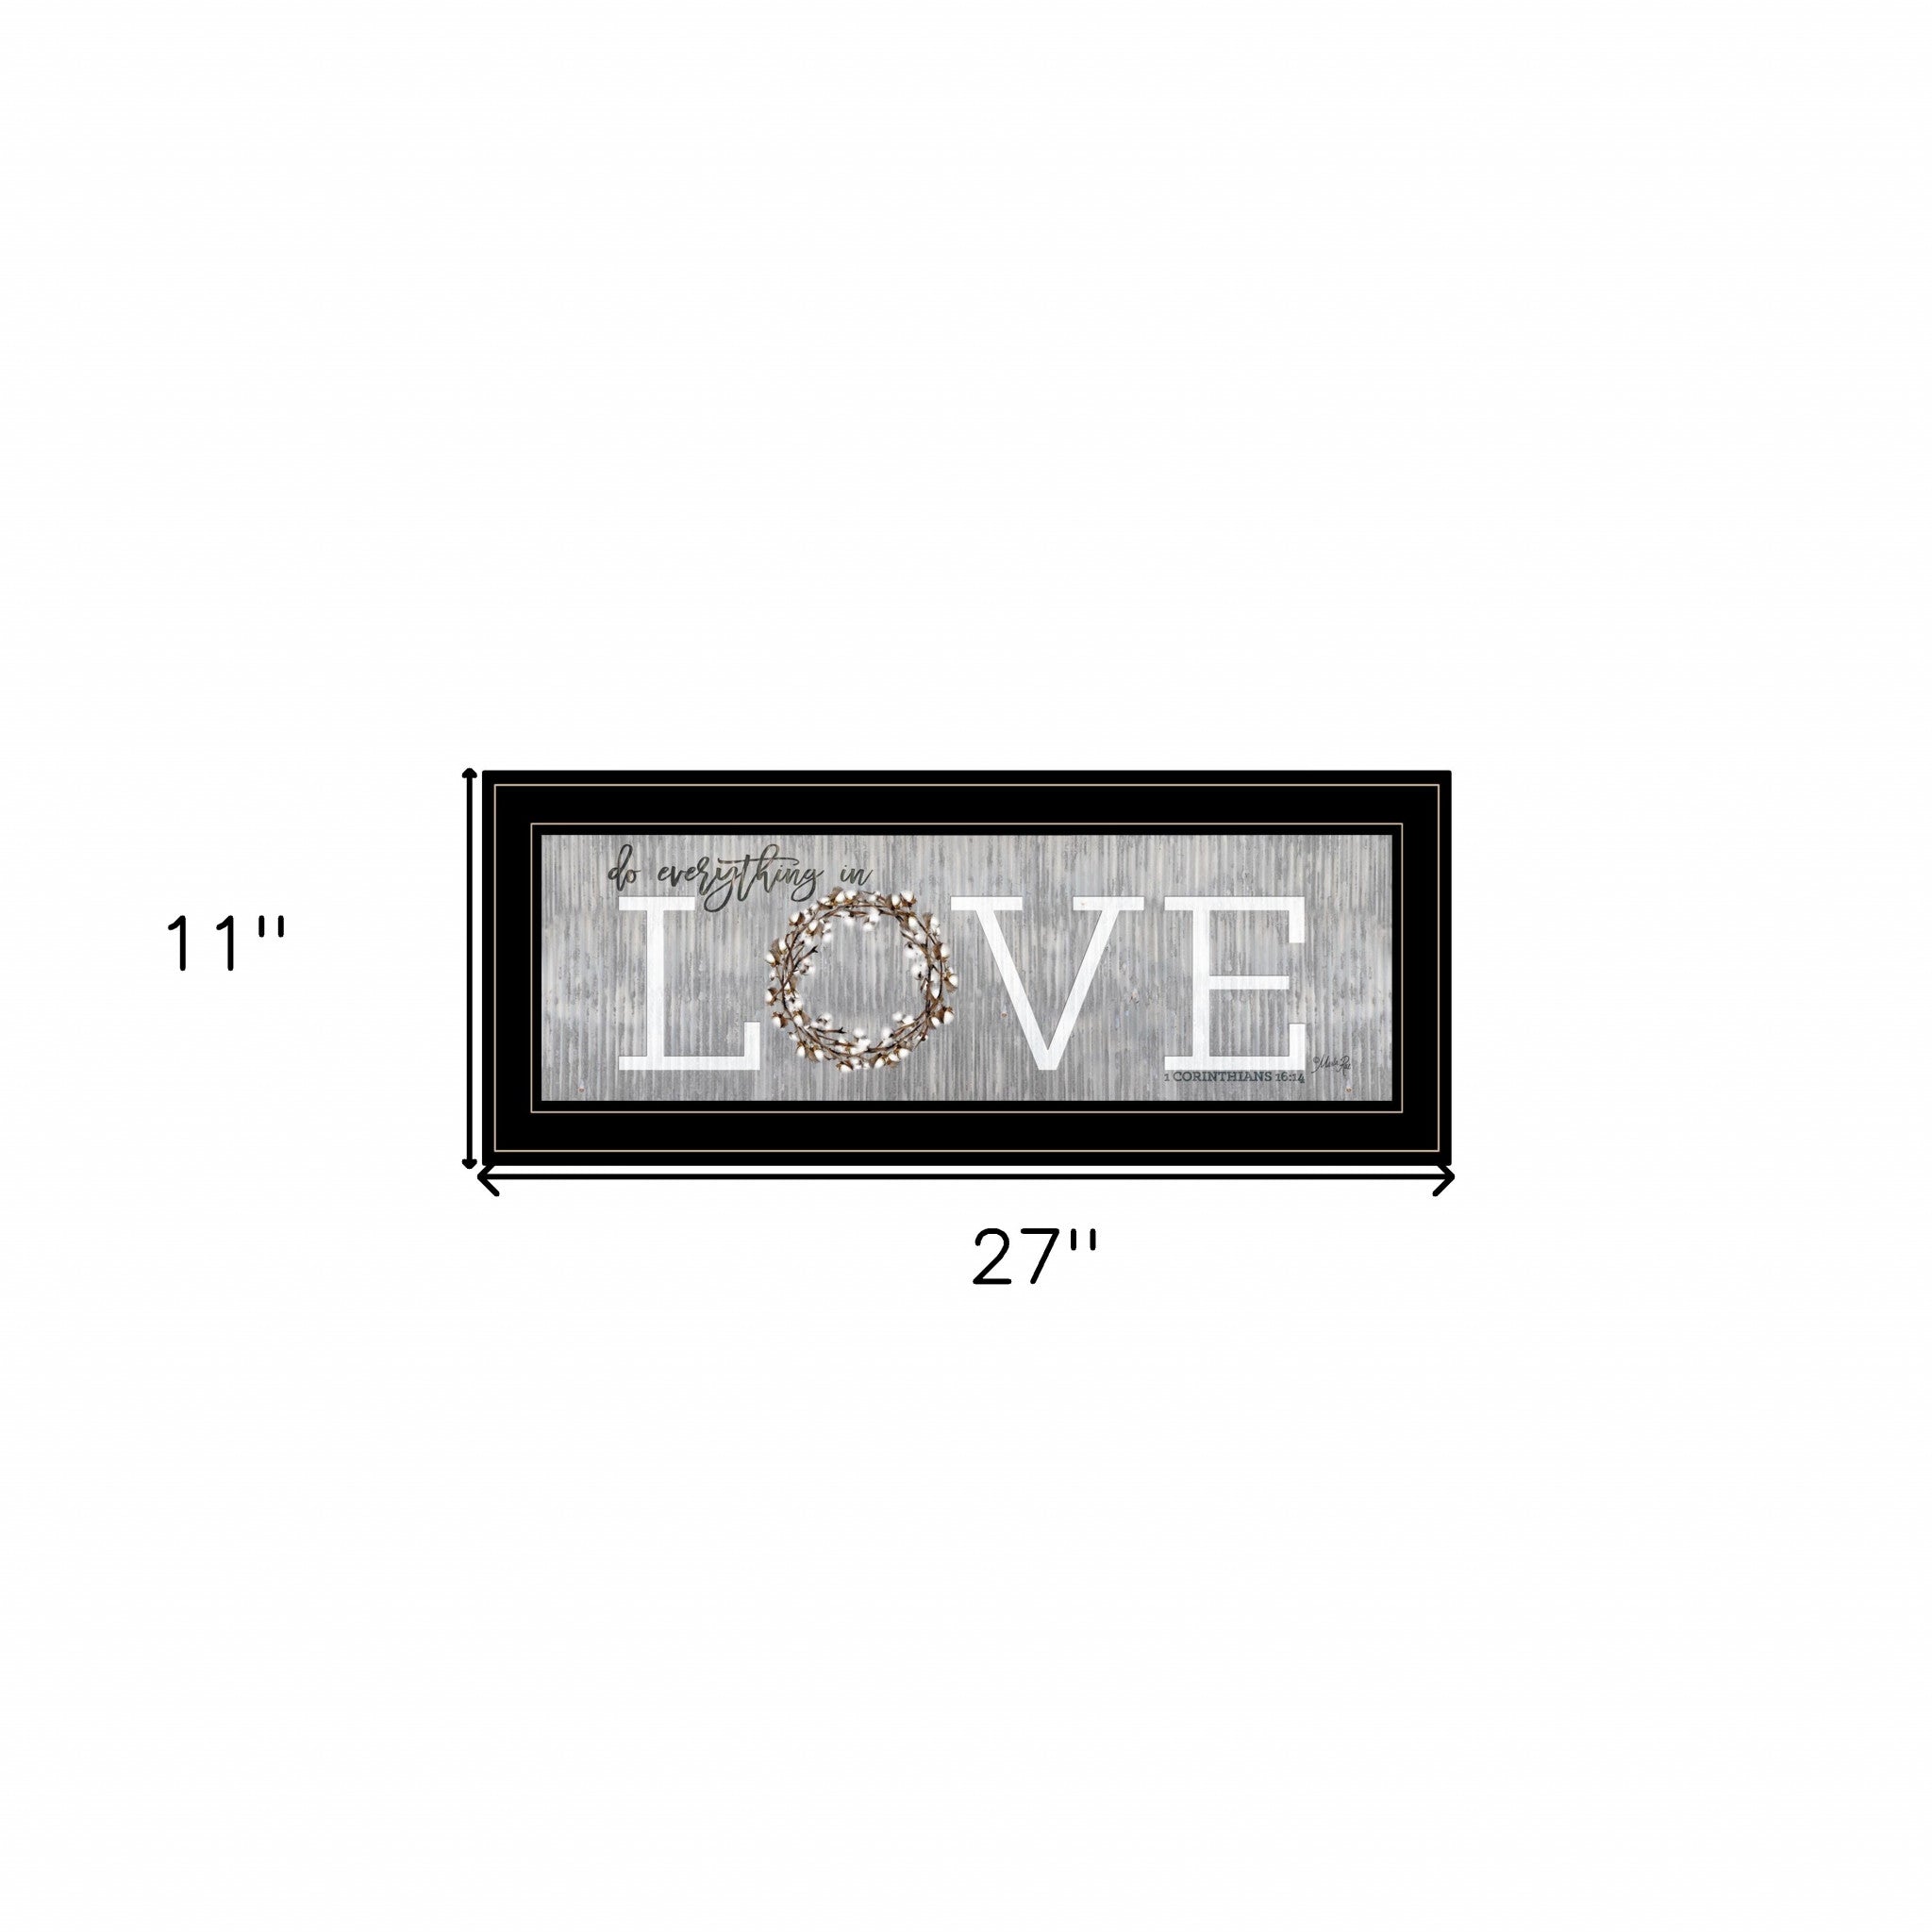 Love Do Everything In Love 1 Black Framed Print Wall Art